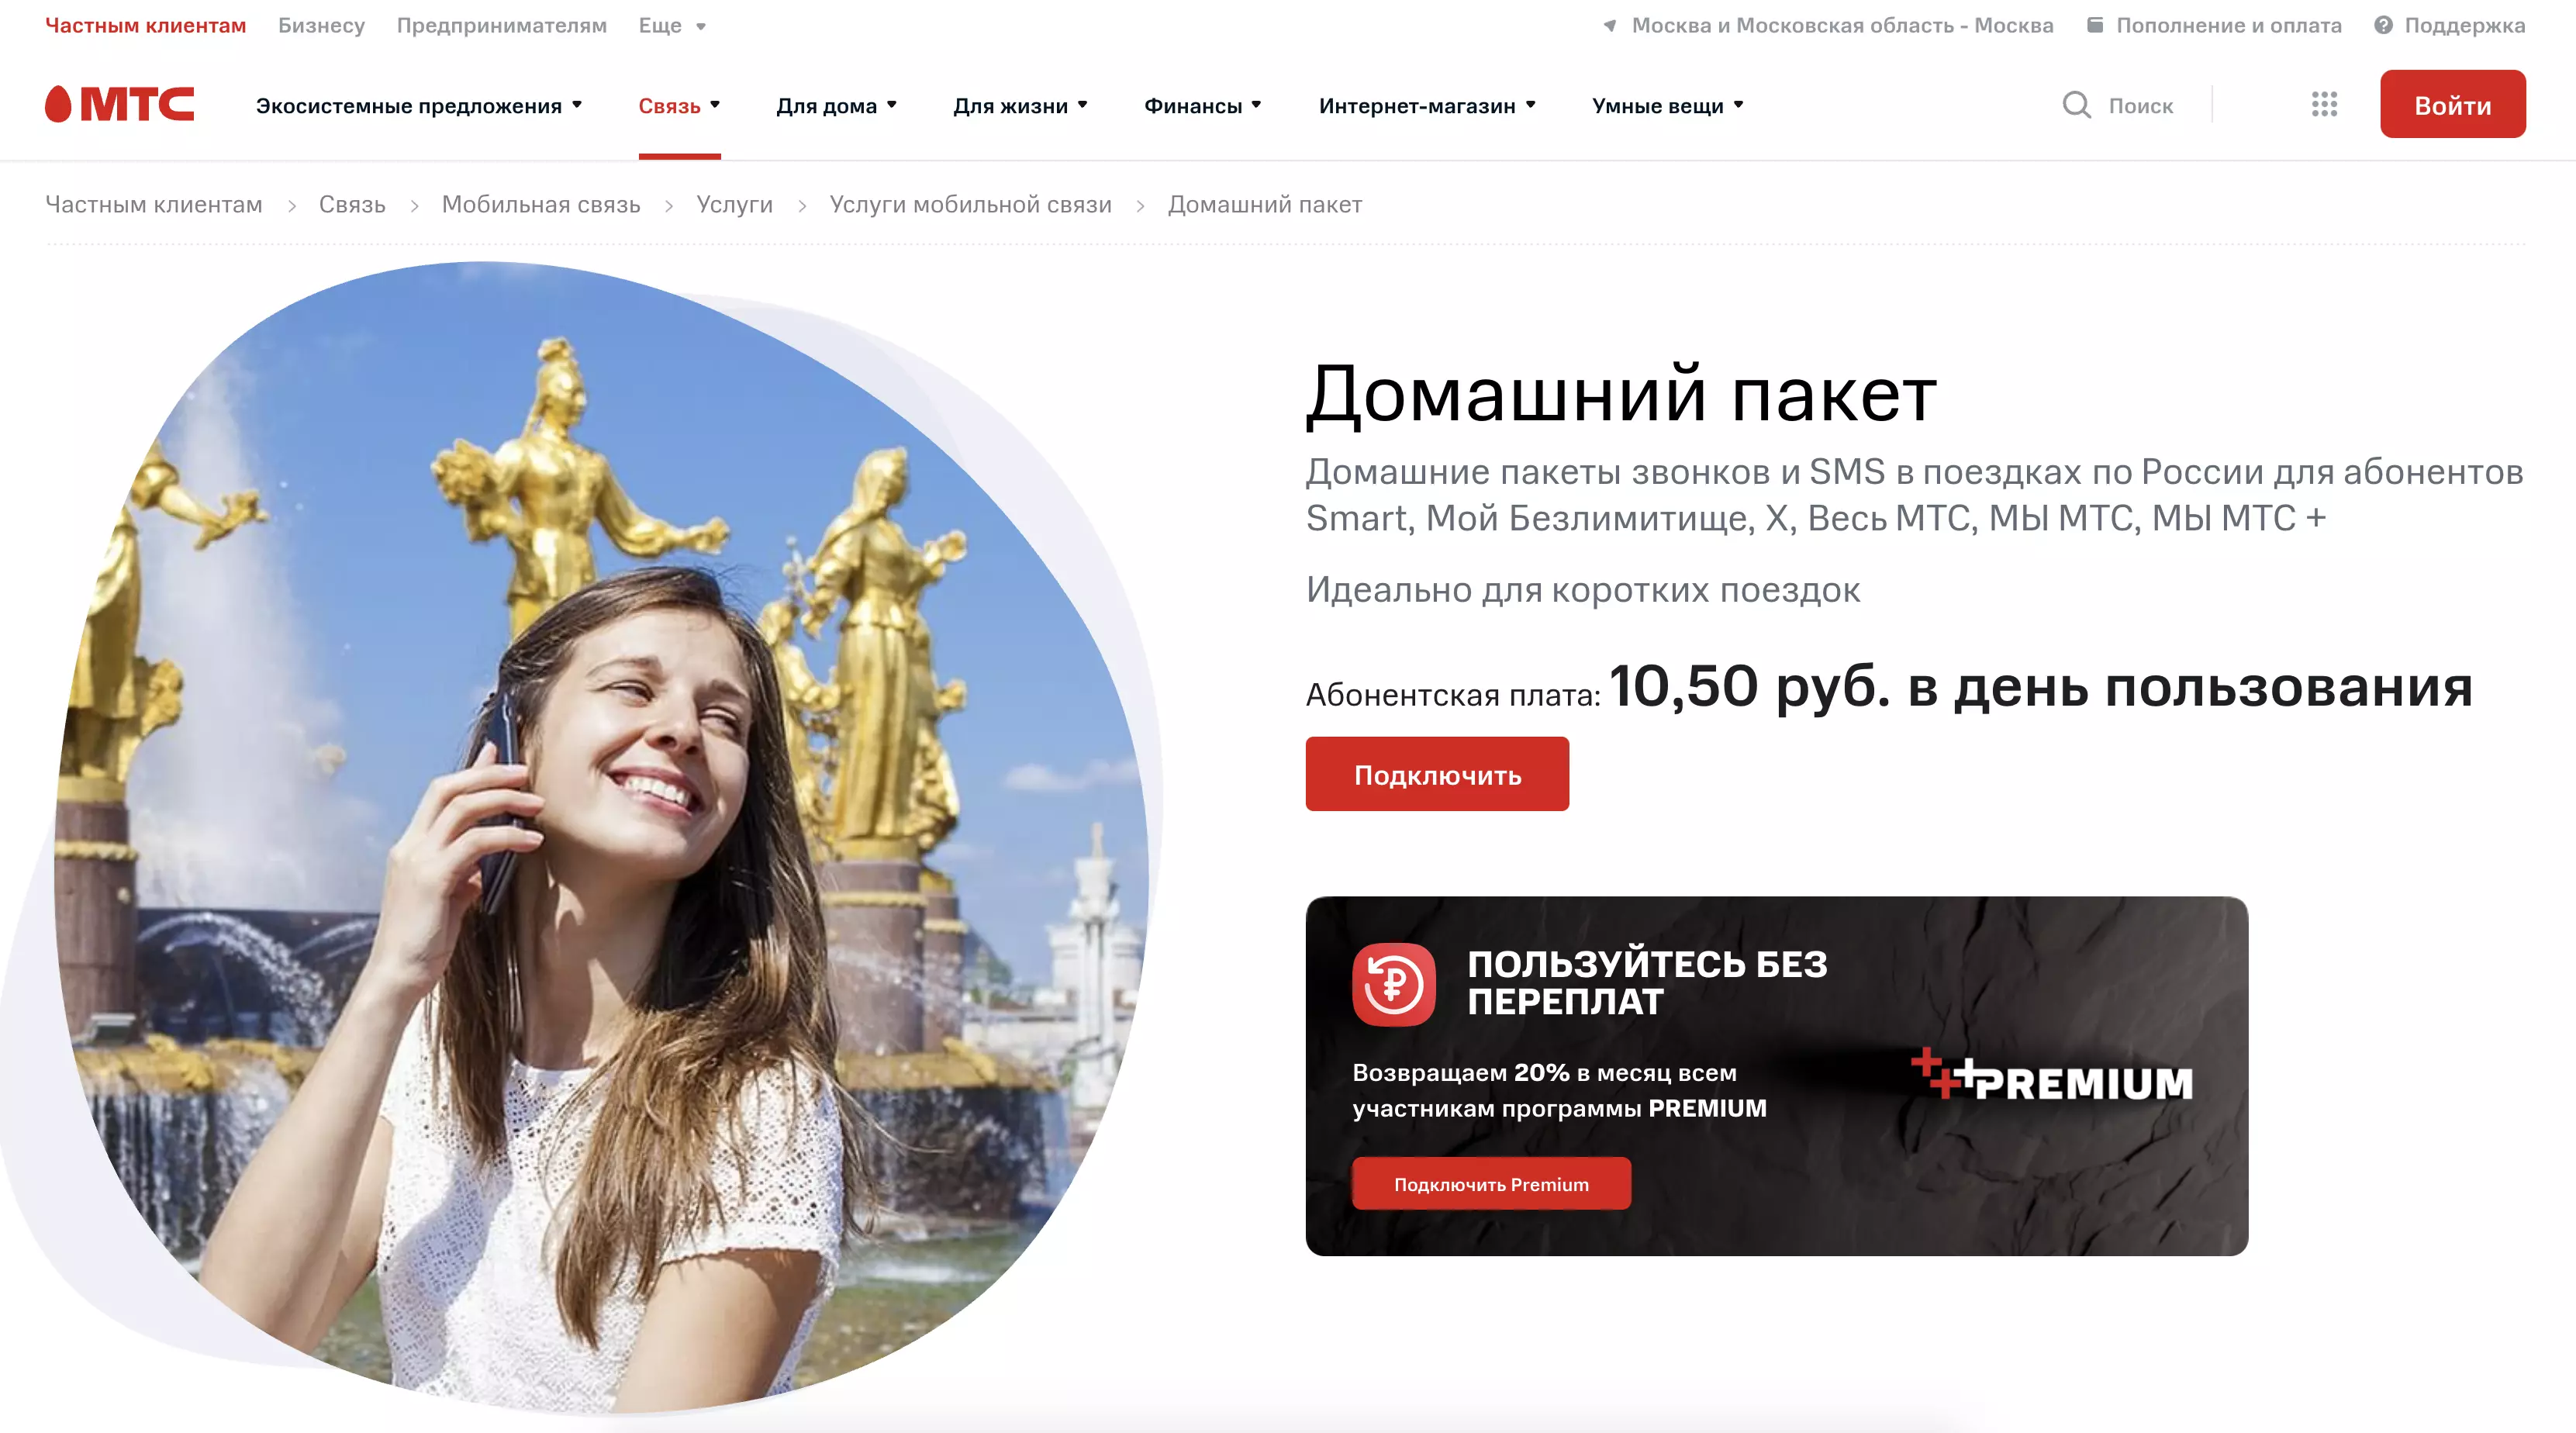 Как подключить мобильный интернет МТС в Крыму